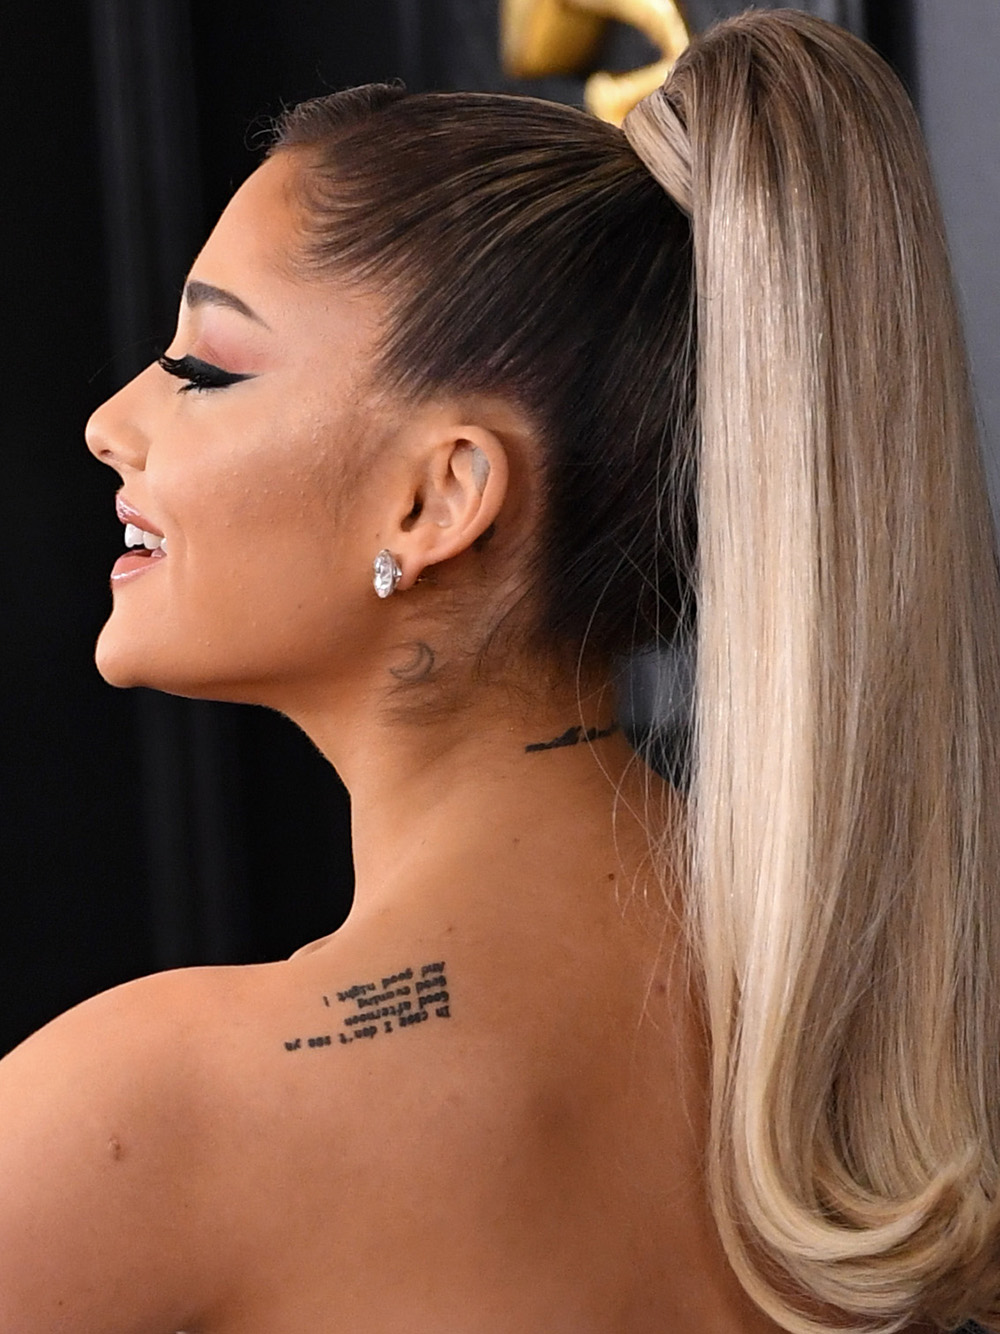 Ariana Grande's New Tattoo Fail Says 